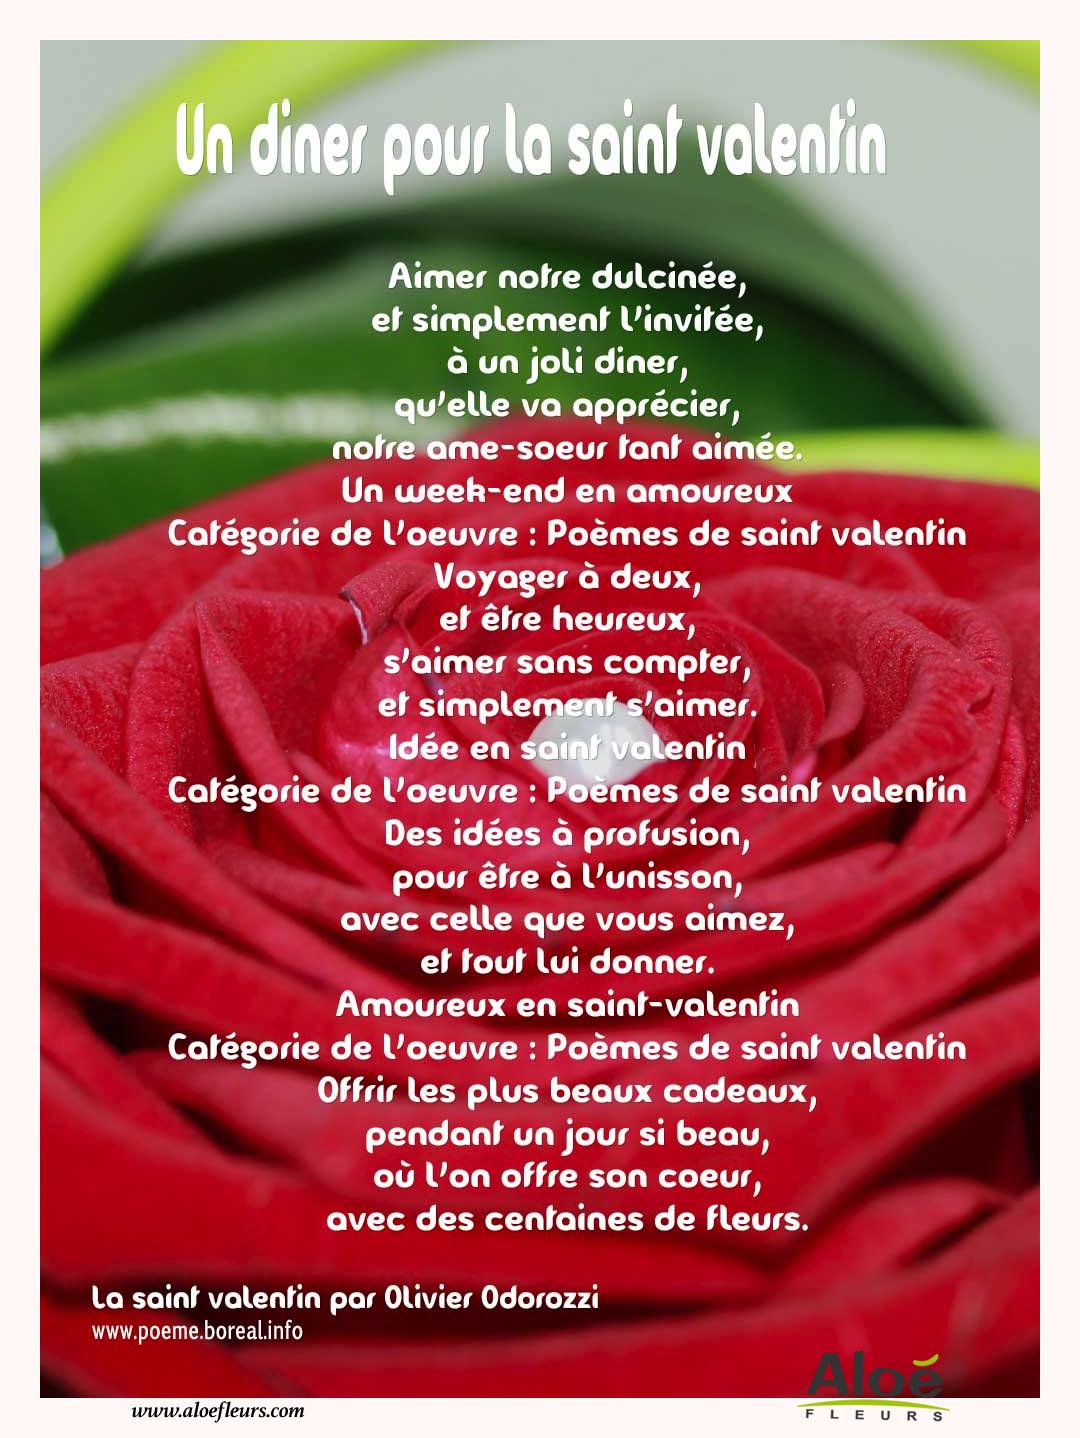 Citations D'amour Et Saint Valentin  Un Diner Pour La Saint Valentin 